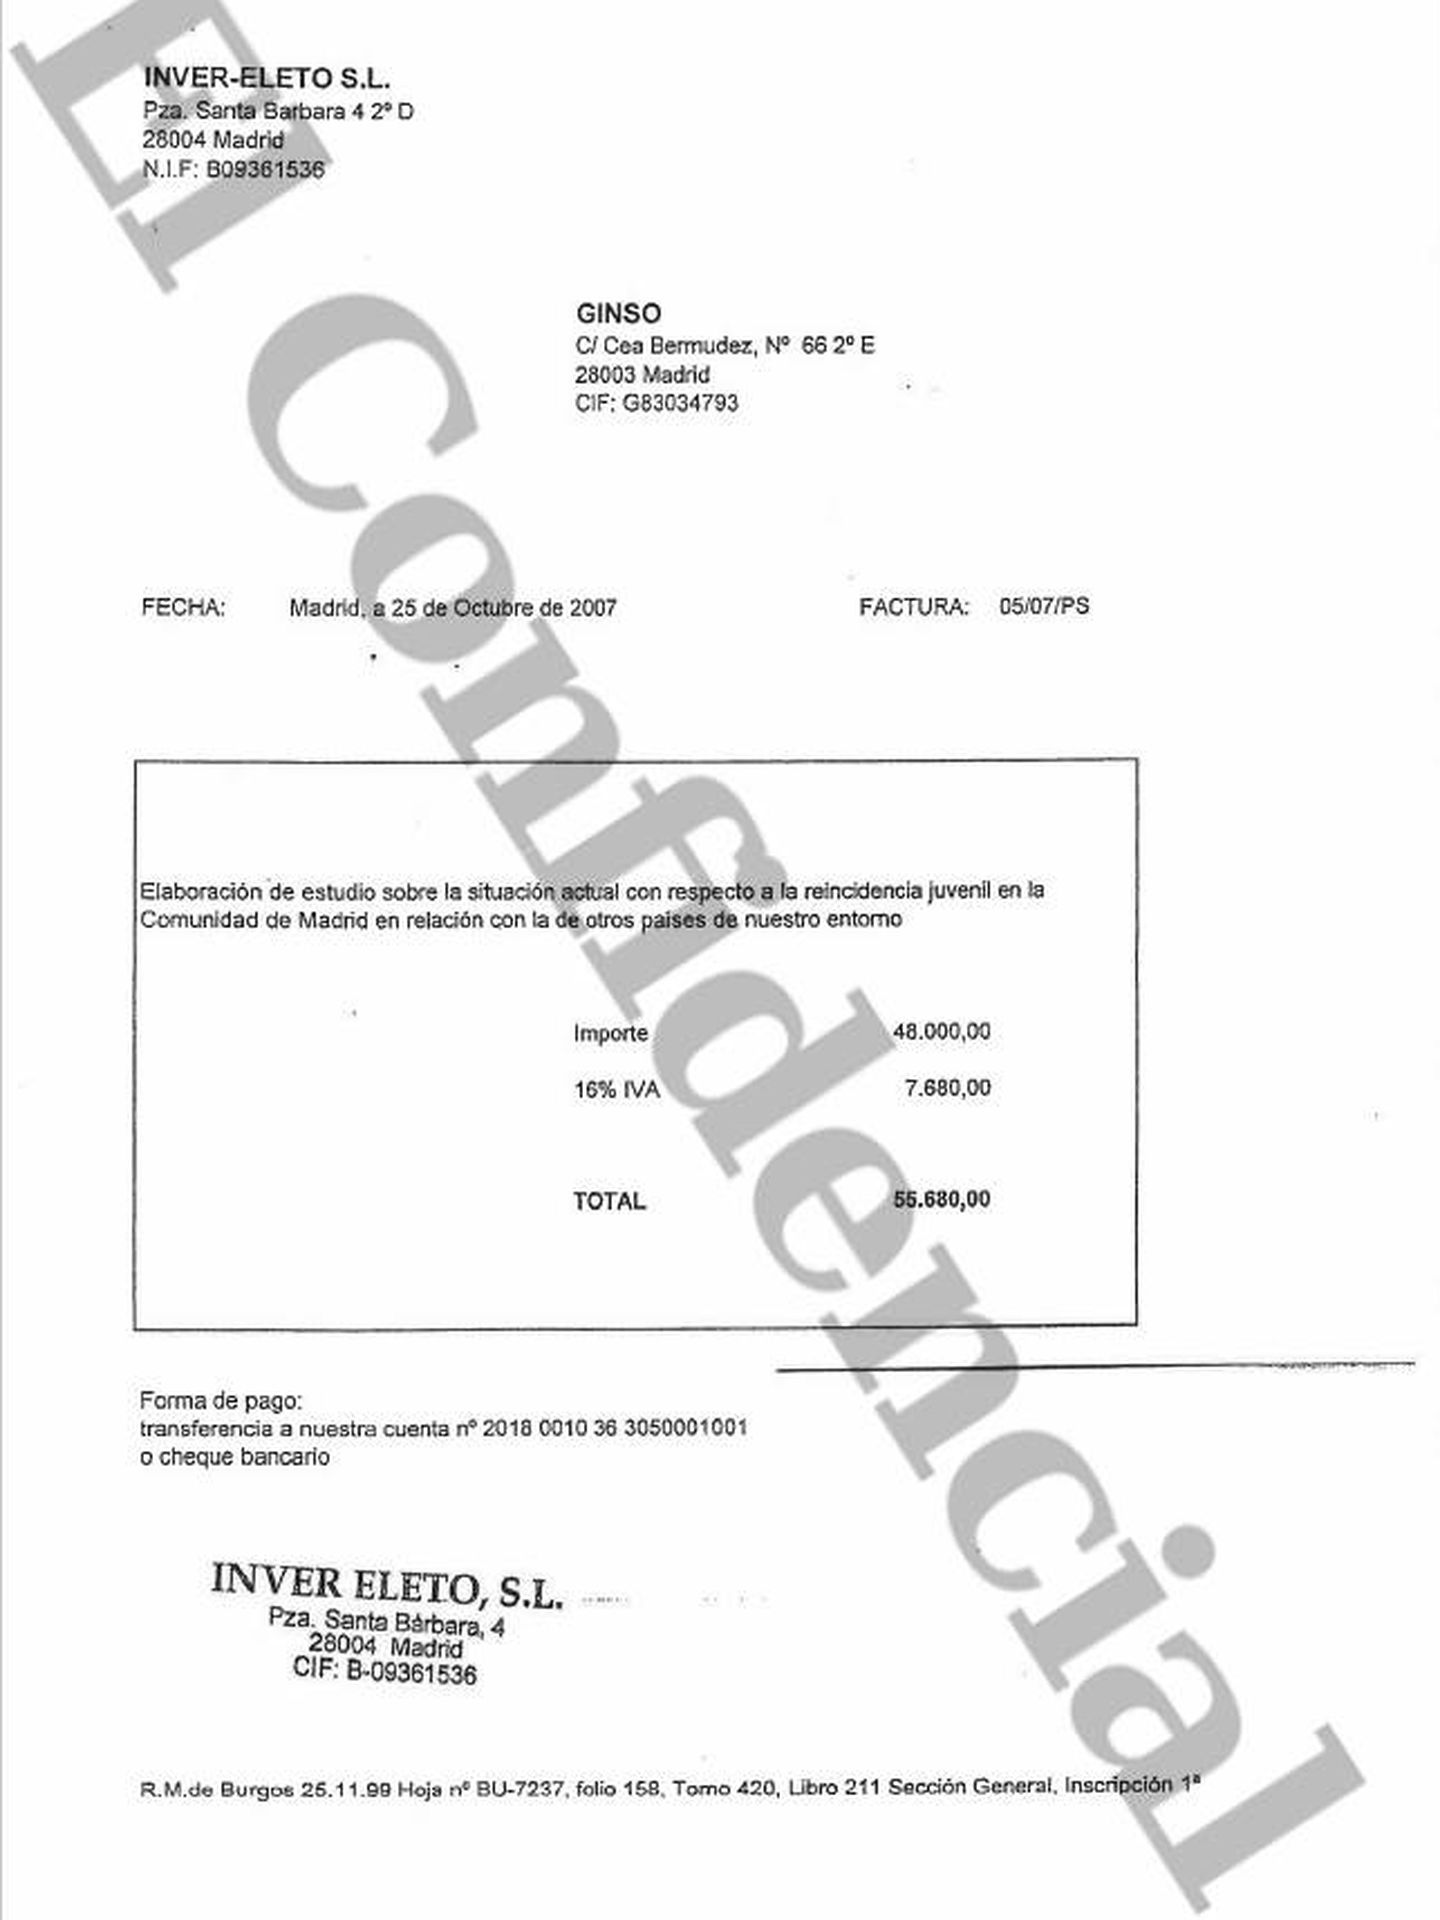 Documentos de pago de la sociedad Inver-Eleto, administrada por el expresidente de Telemadrid (2004-2006).